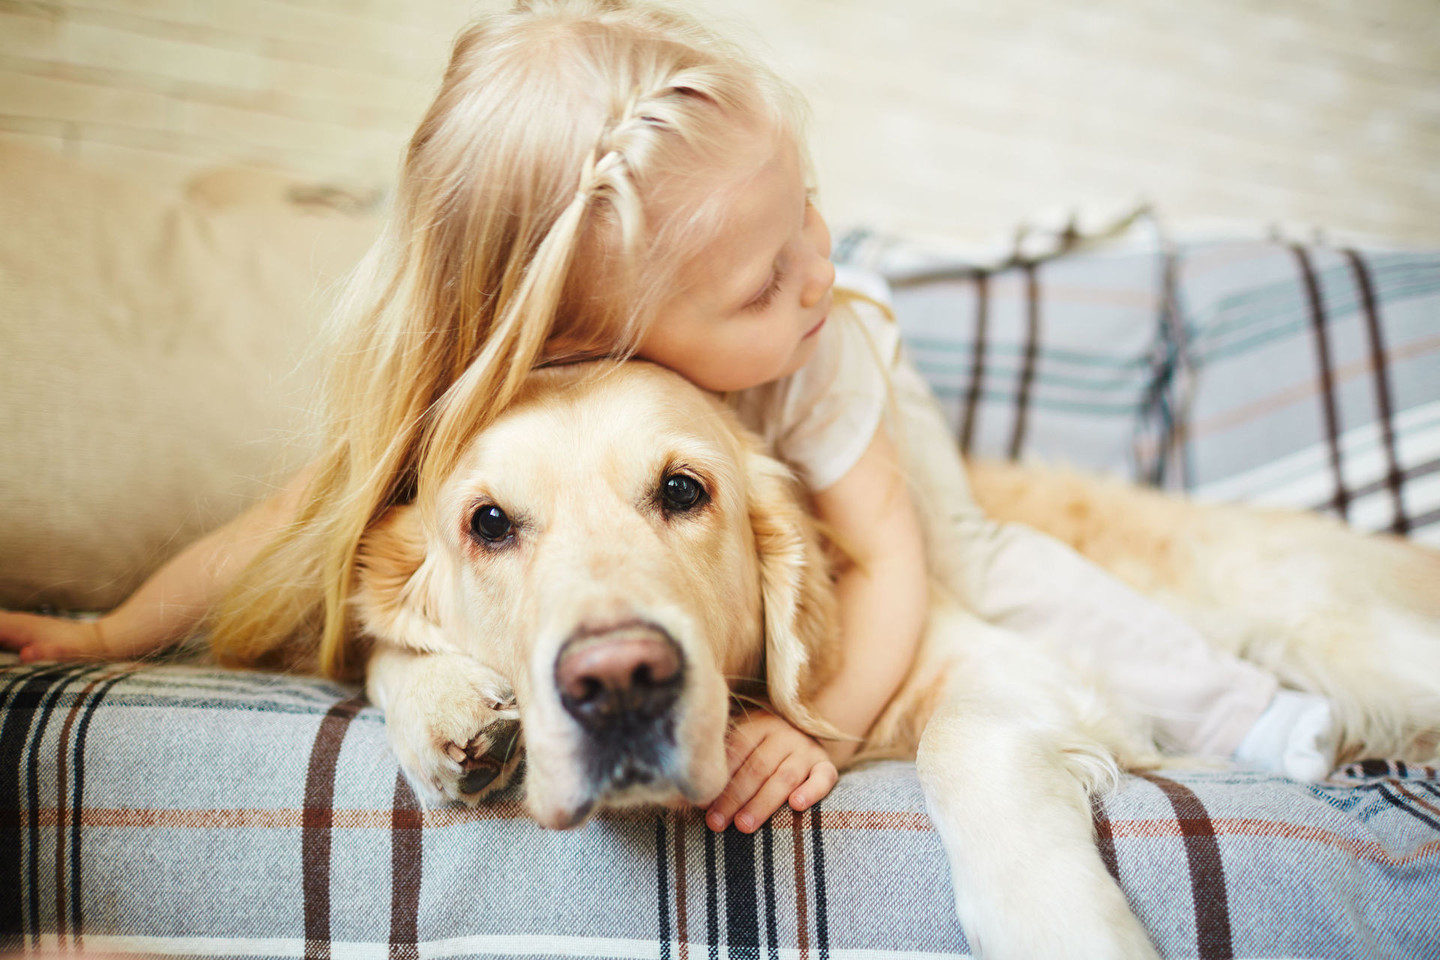 Nustatyta, kad šuns meilė mažina streso hormono kortizolio kiekį vaikų kraujyje.<br>123rf nuotr.